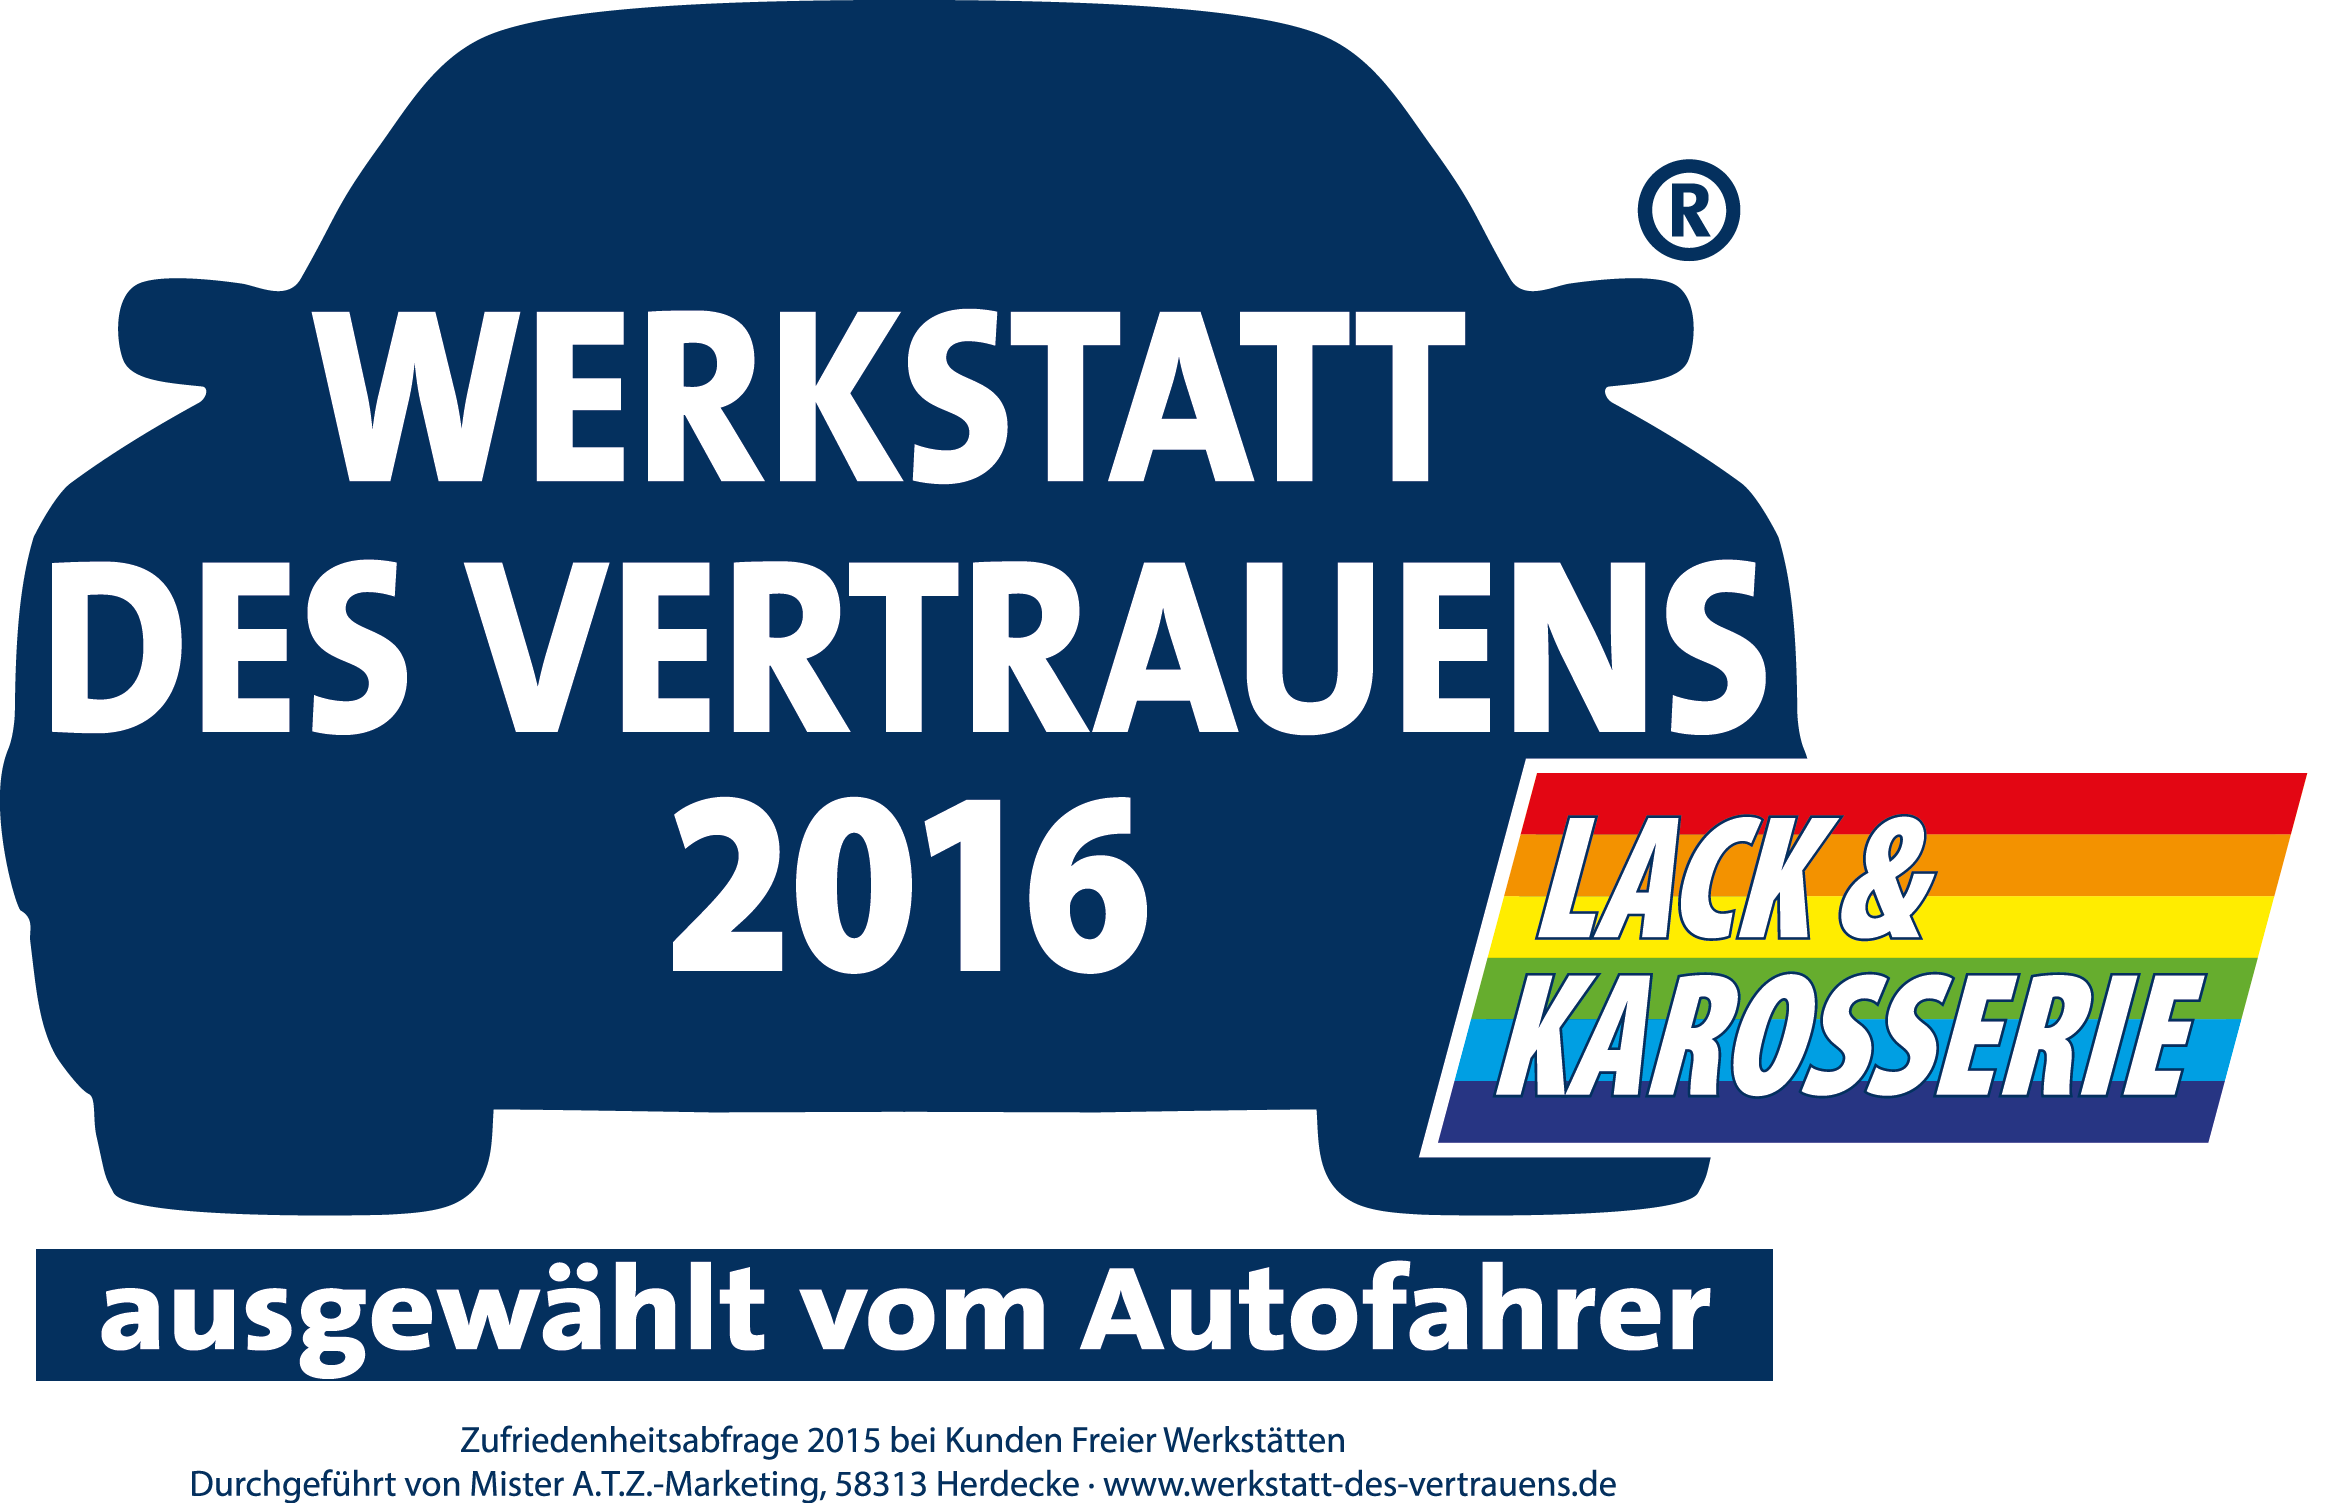 Autolackierung und Karosseriebau in Altenburg | WERKSTATT DES VERTRAUENS 2016